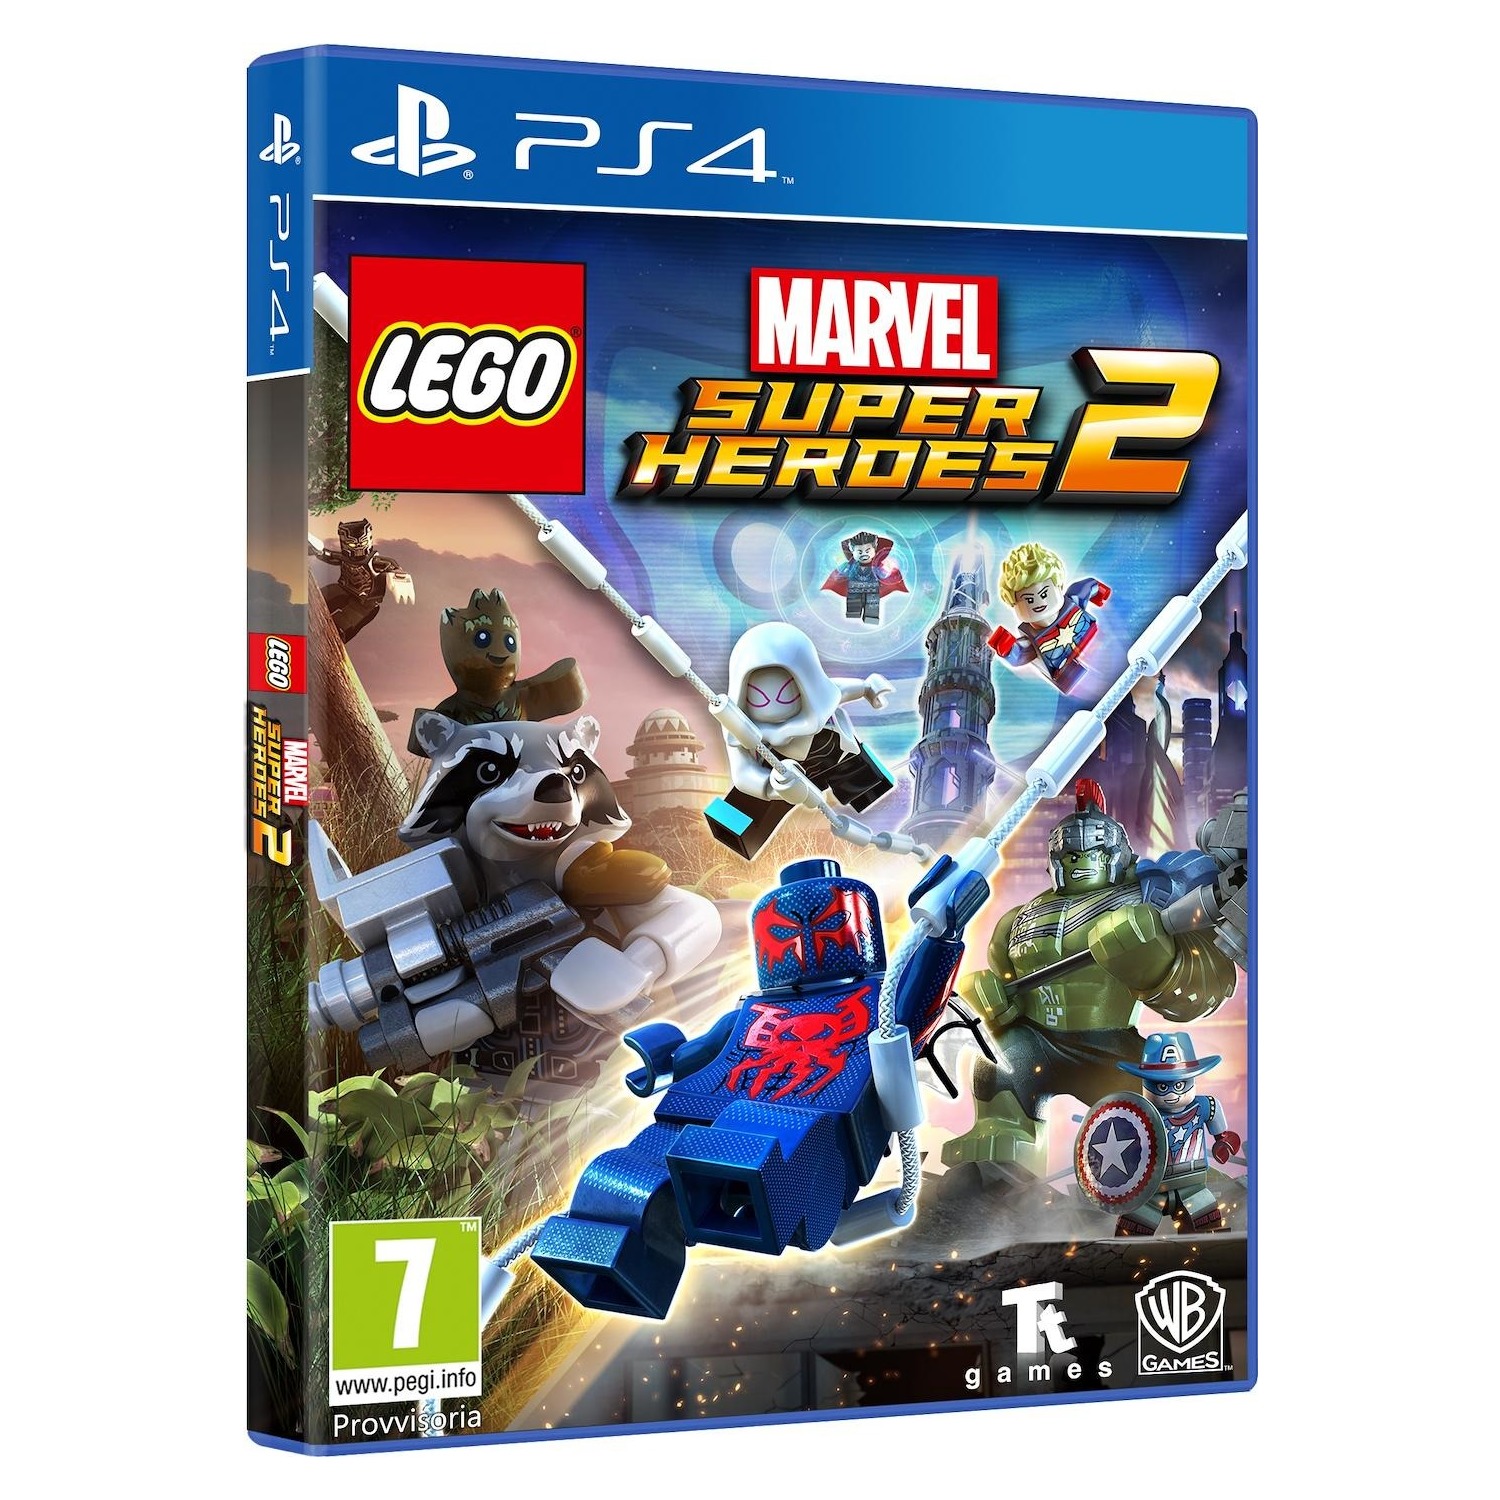 Immagine per Gioco PS4 Lego Marvel Superheroes 2 da DIMOStore